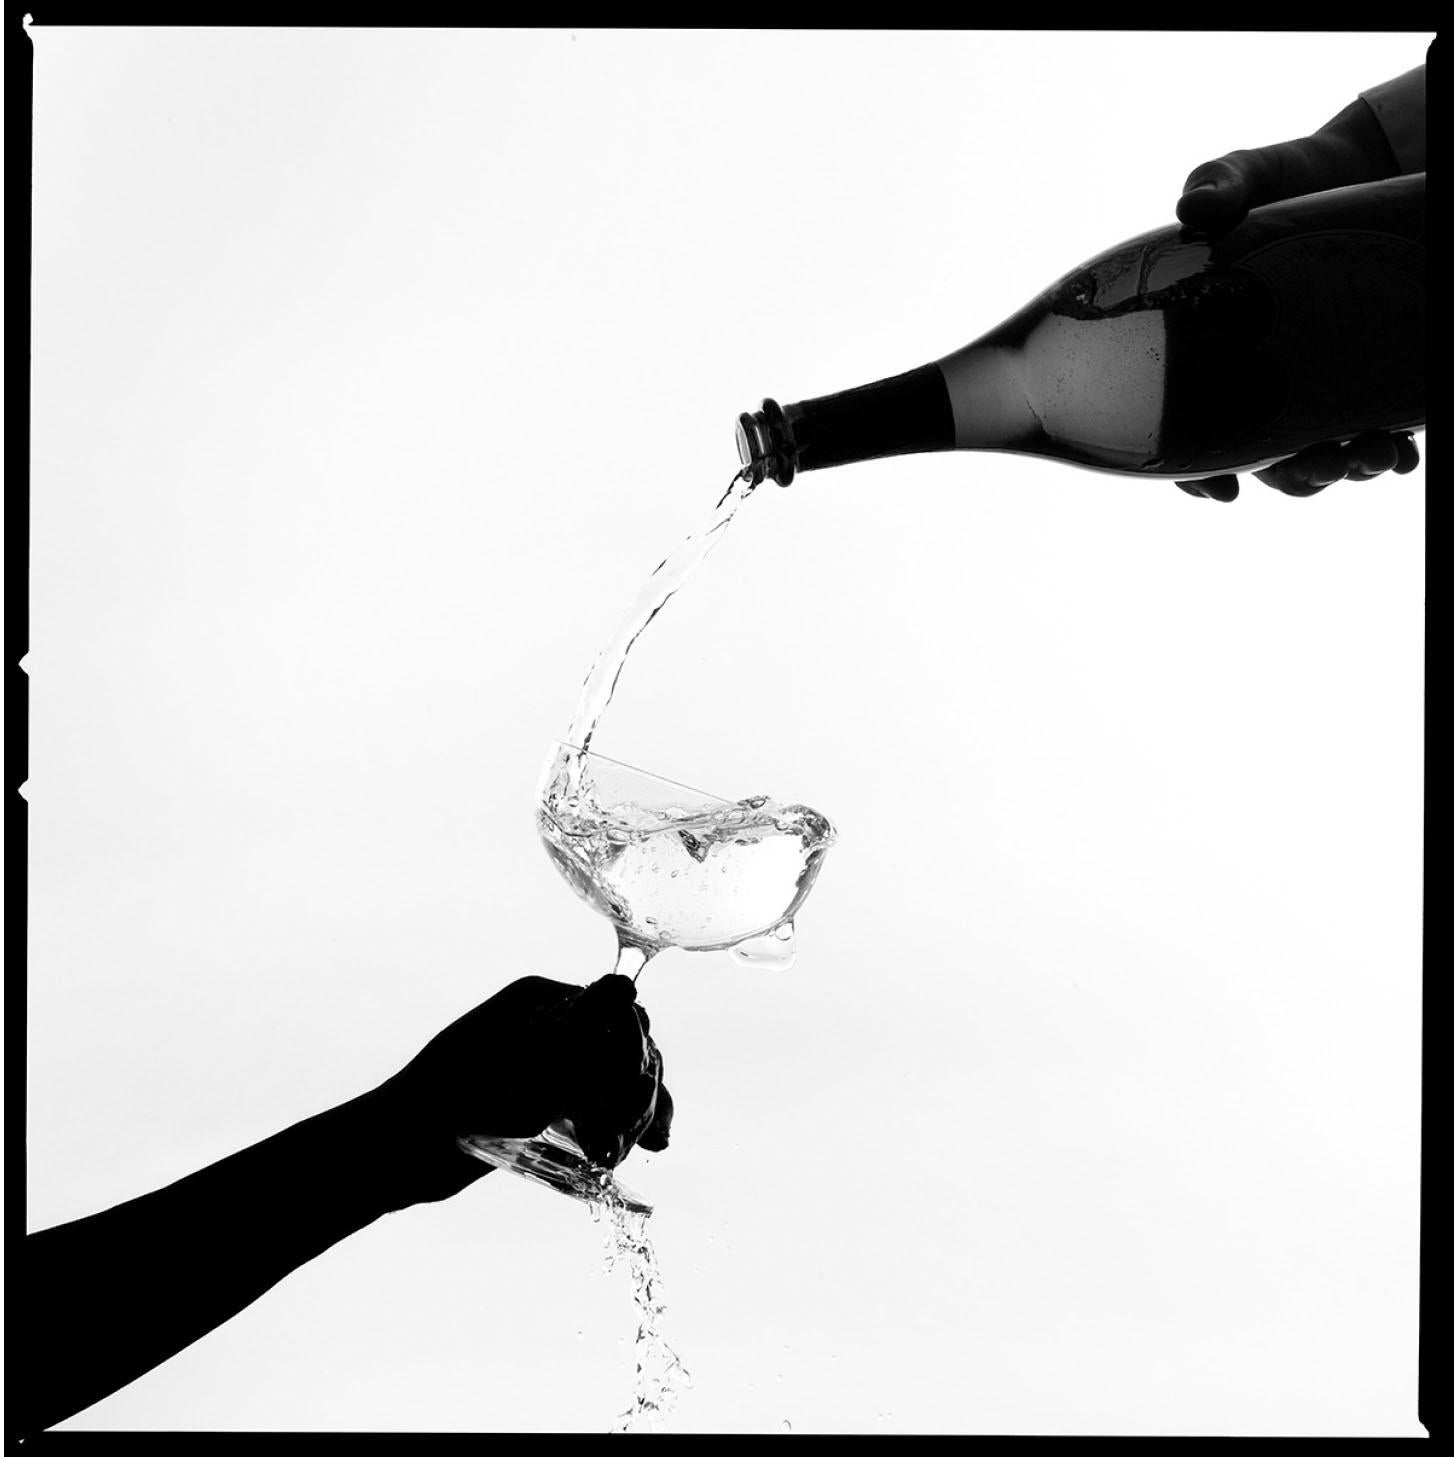 Tyler Shields - Champagner Silhouette, Fotografie 2020, gedruckt nach